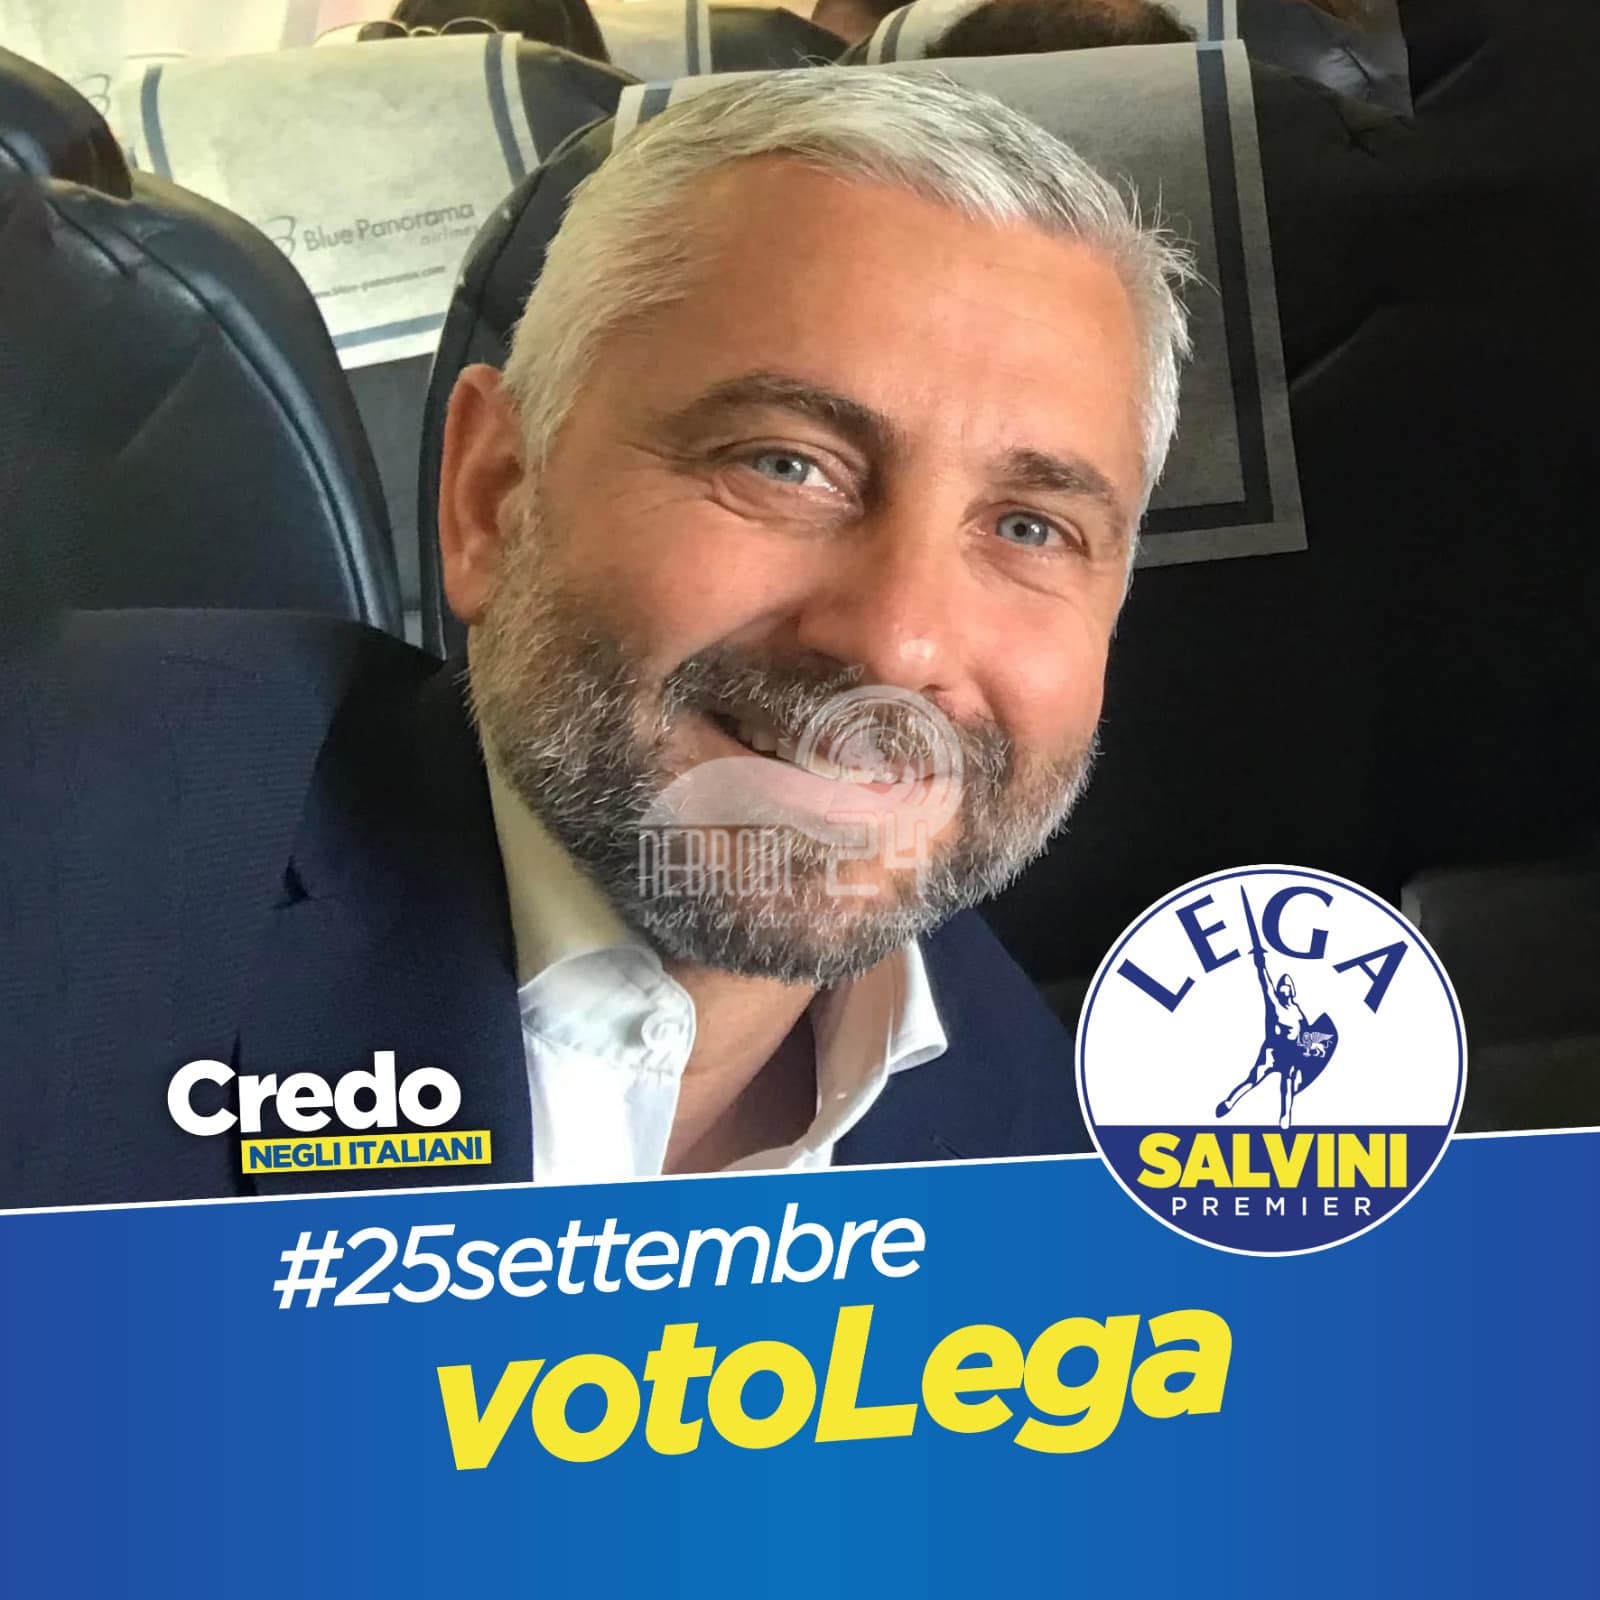 Elezioni Politiche – Nino Germanà candidato capolista per la Lega al Senato nel collegio della Sicilia Orientale